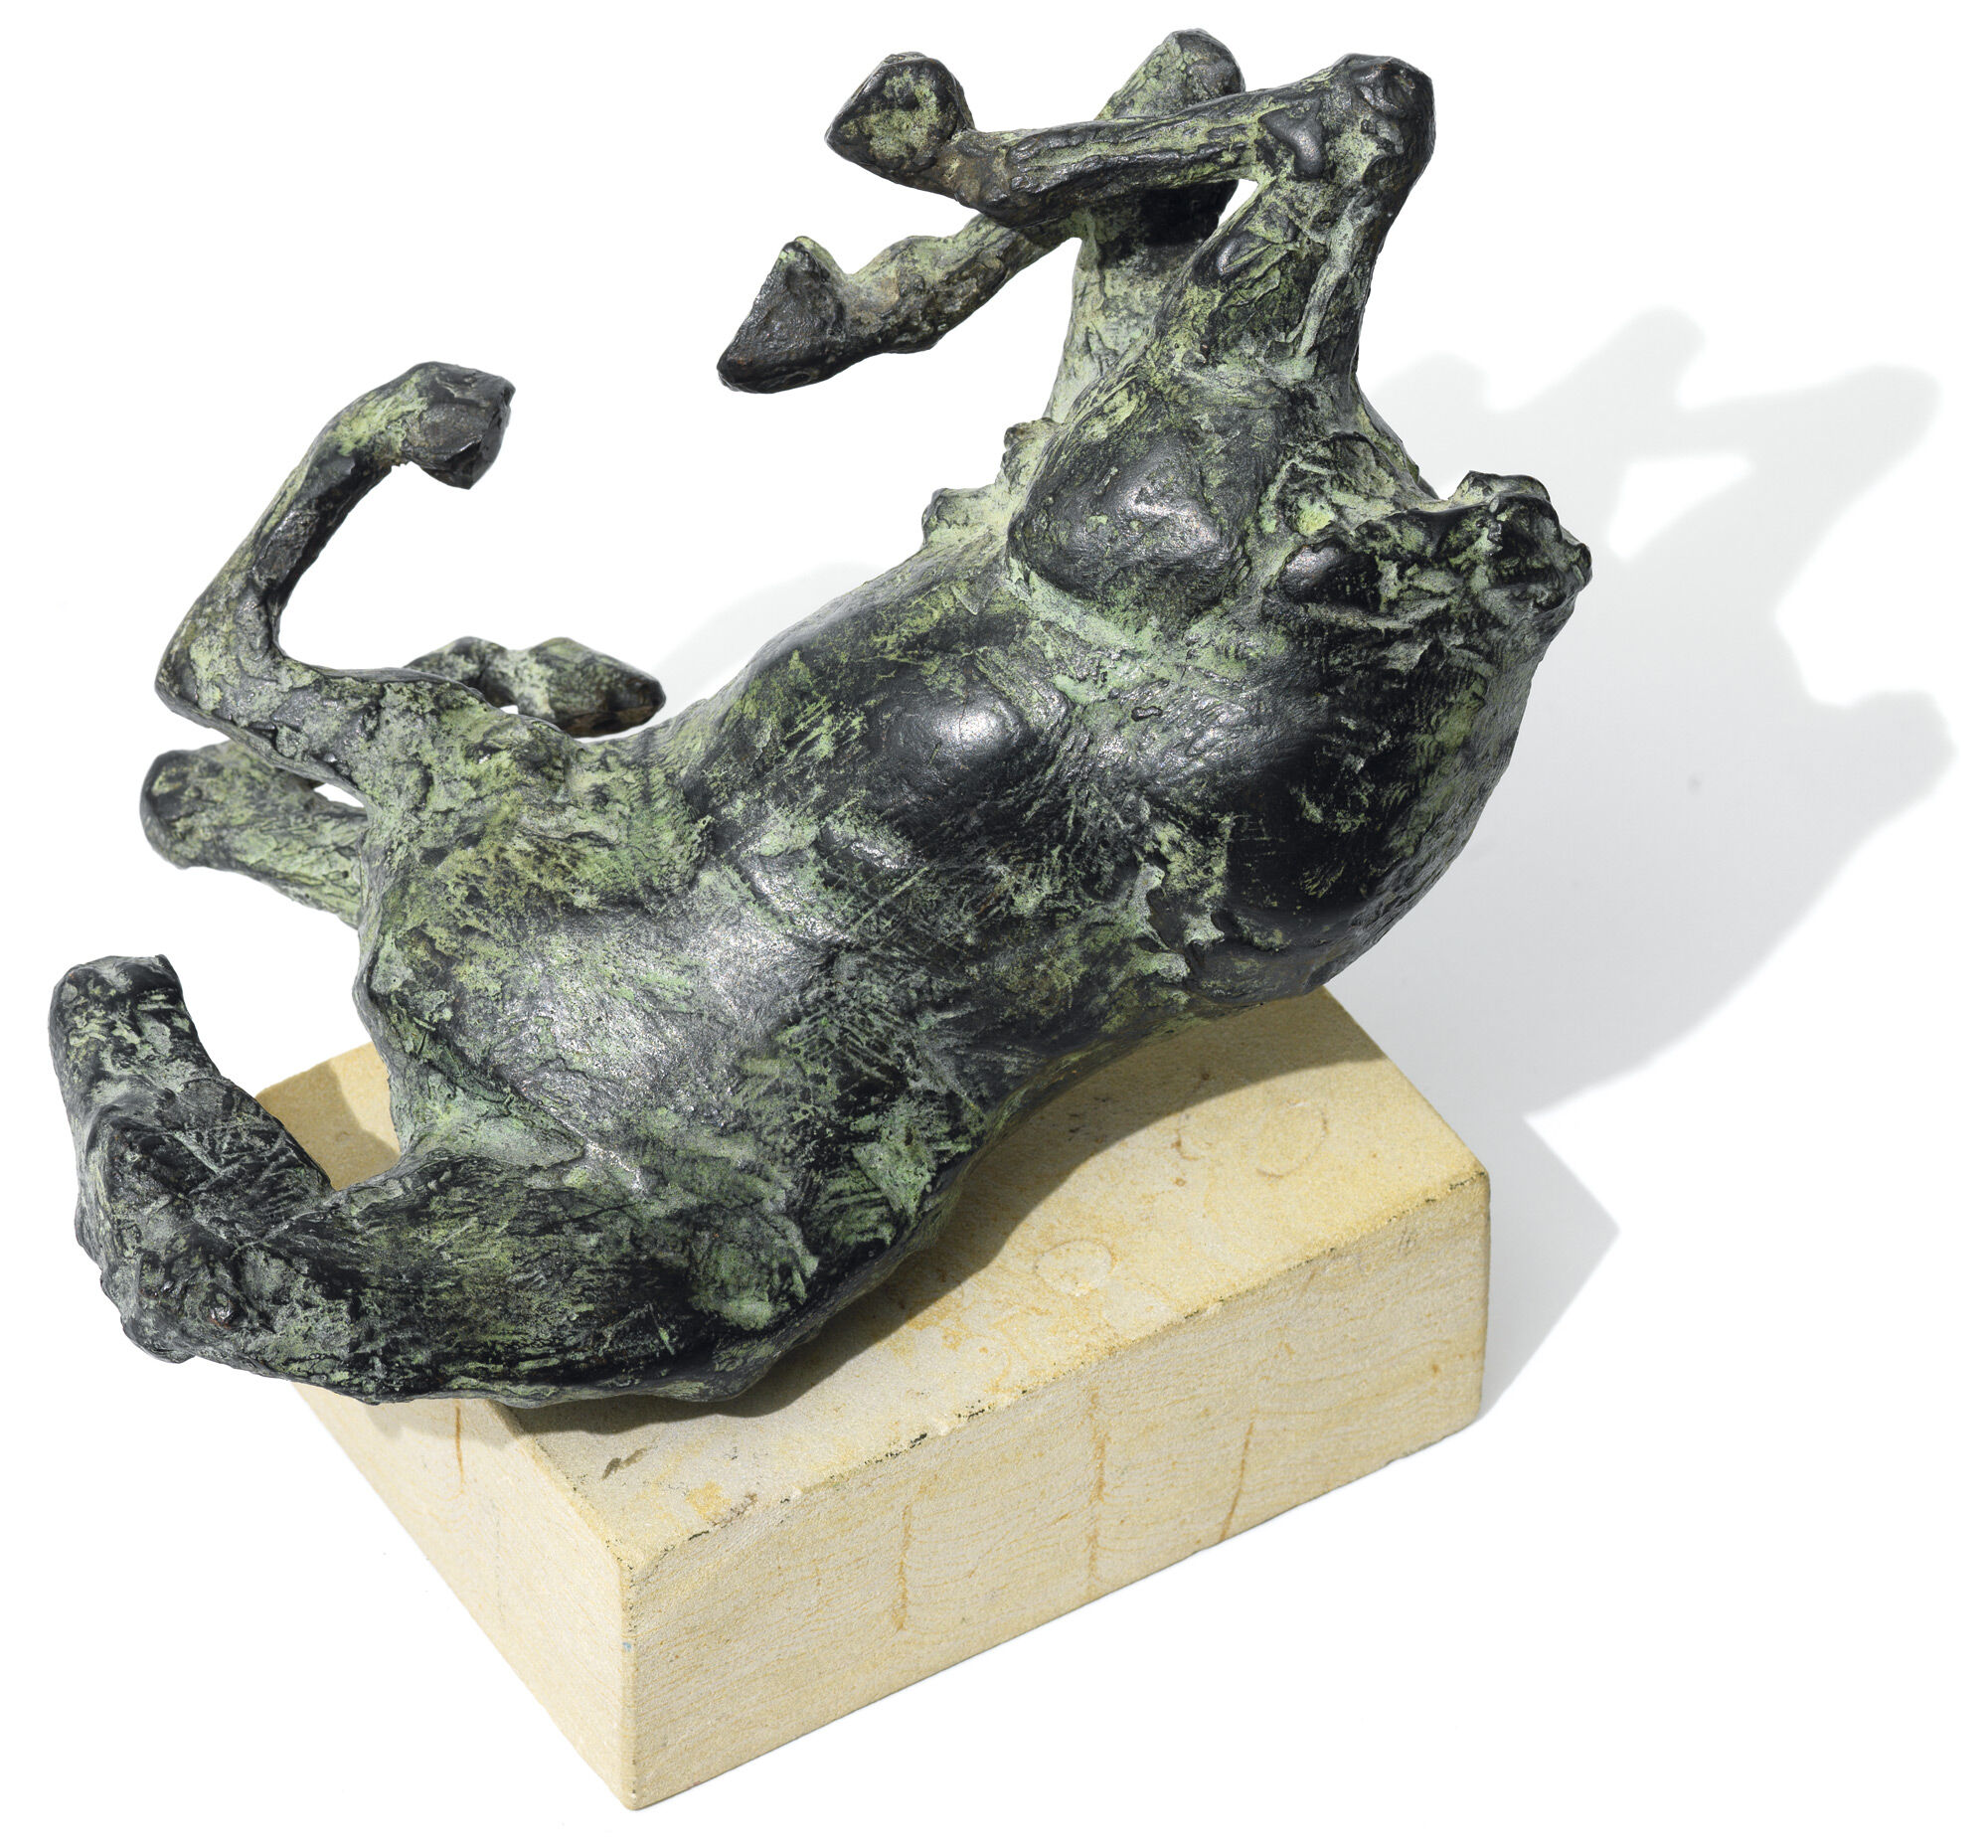 Skulptur "Rullende hest" (1997), bronze von Thomas Jastram